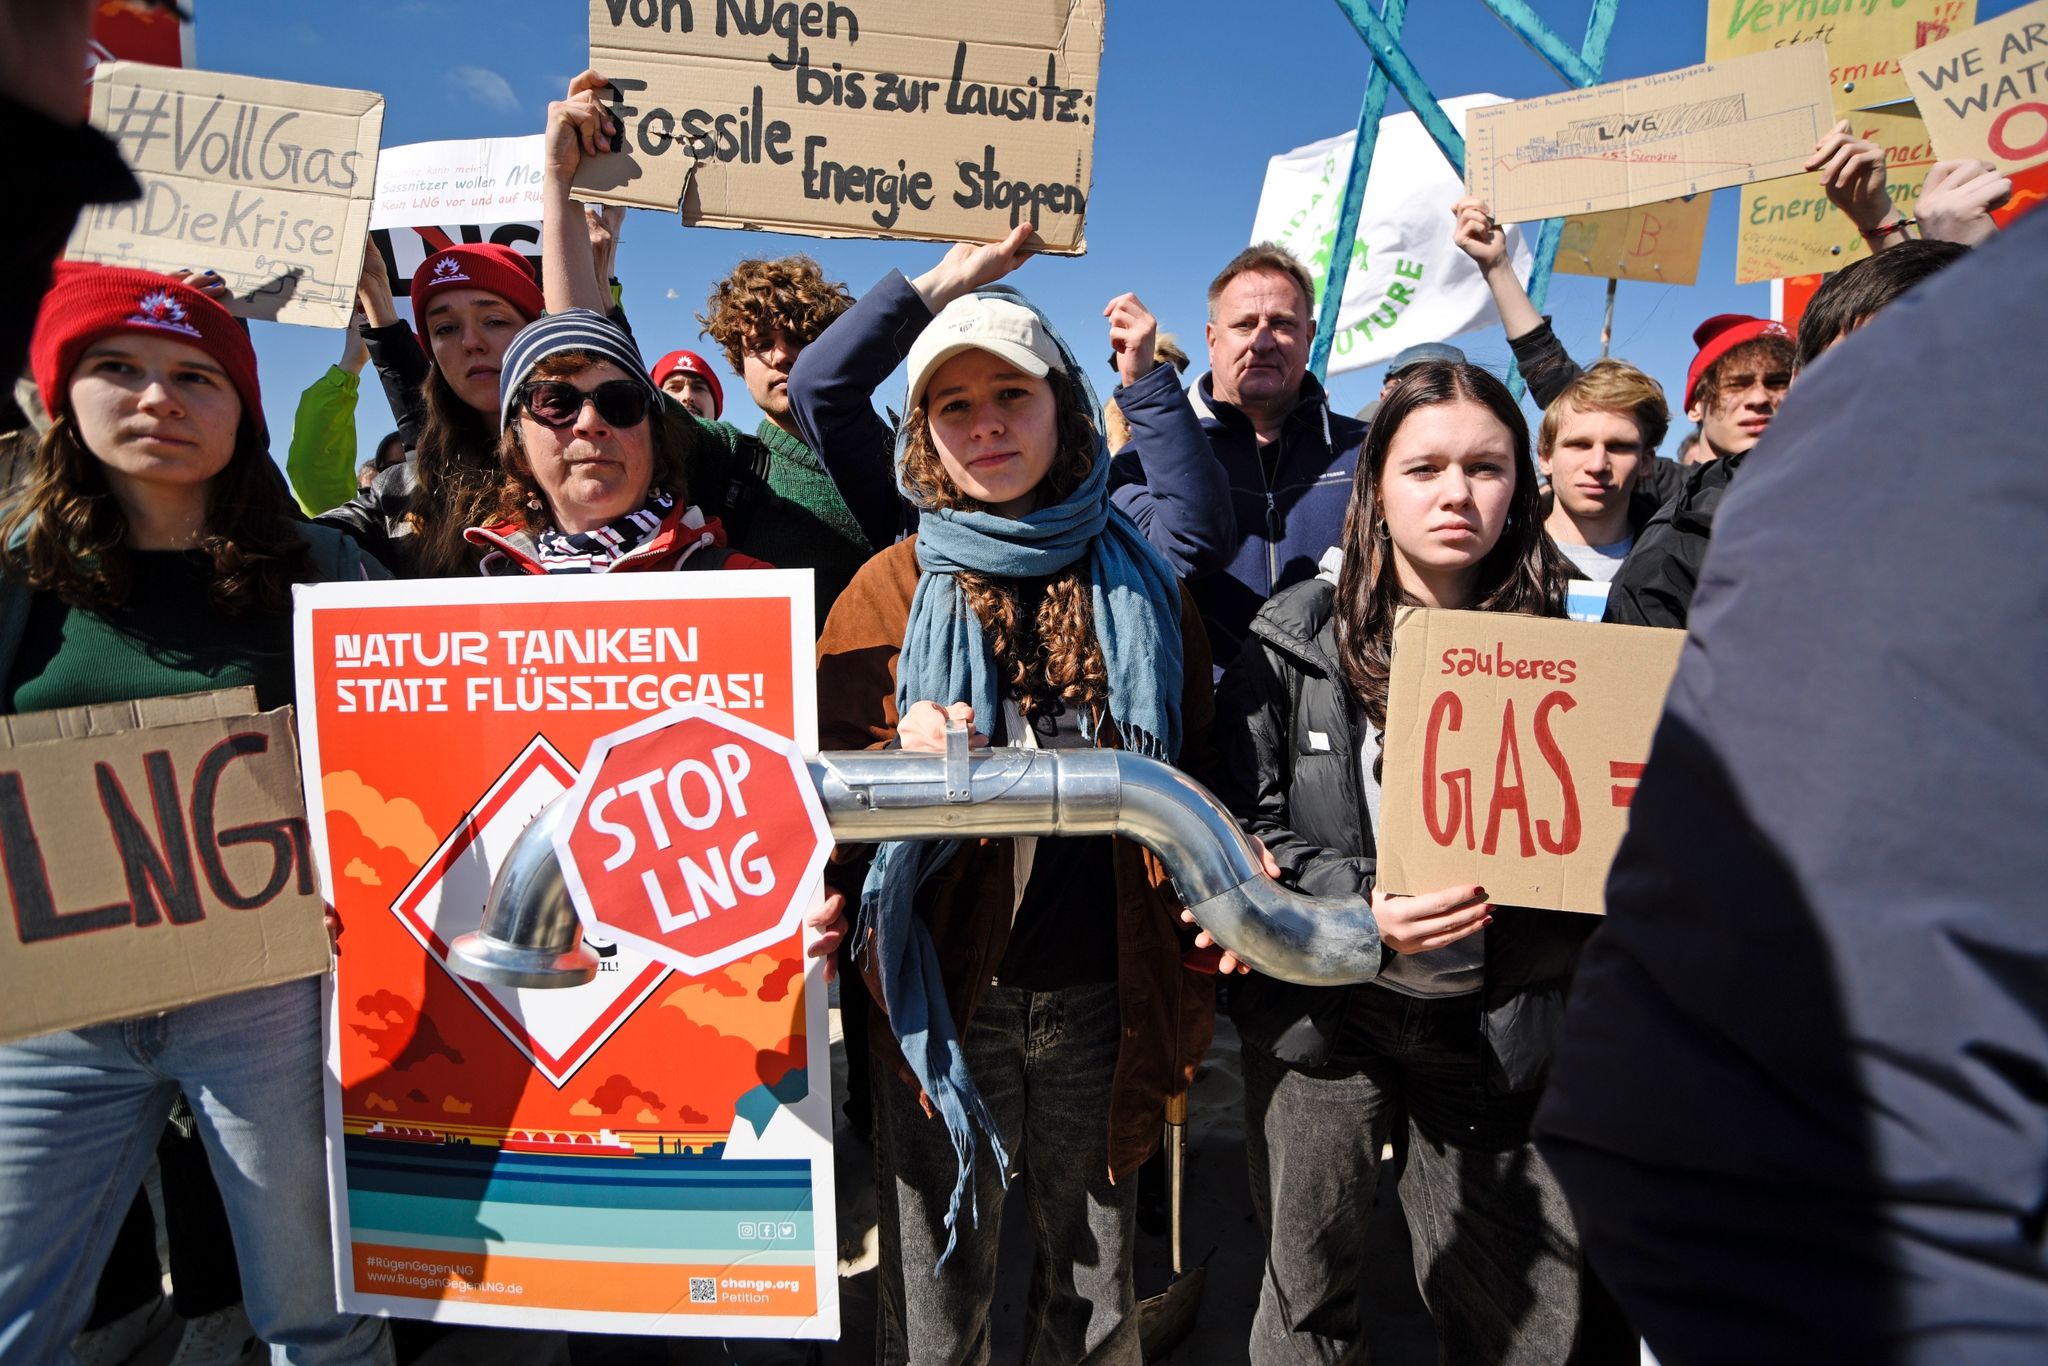 Klimaaktivisten von Fridays for Future zeigen am Strand von Binz auf der Insel Rügen Plakate gegen die geplante LNG-Anlage vor dem Ostseebad.